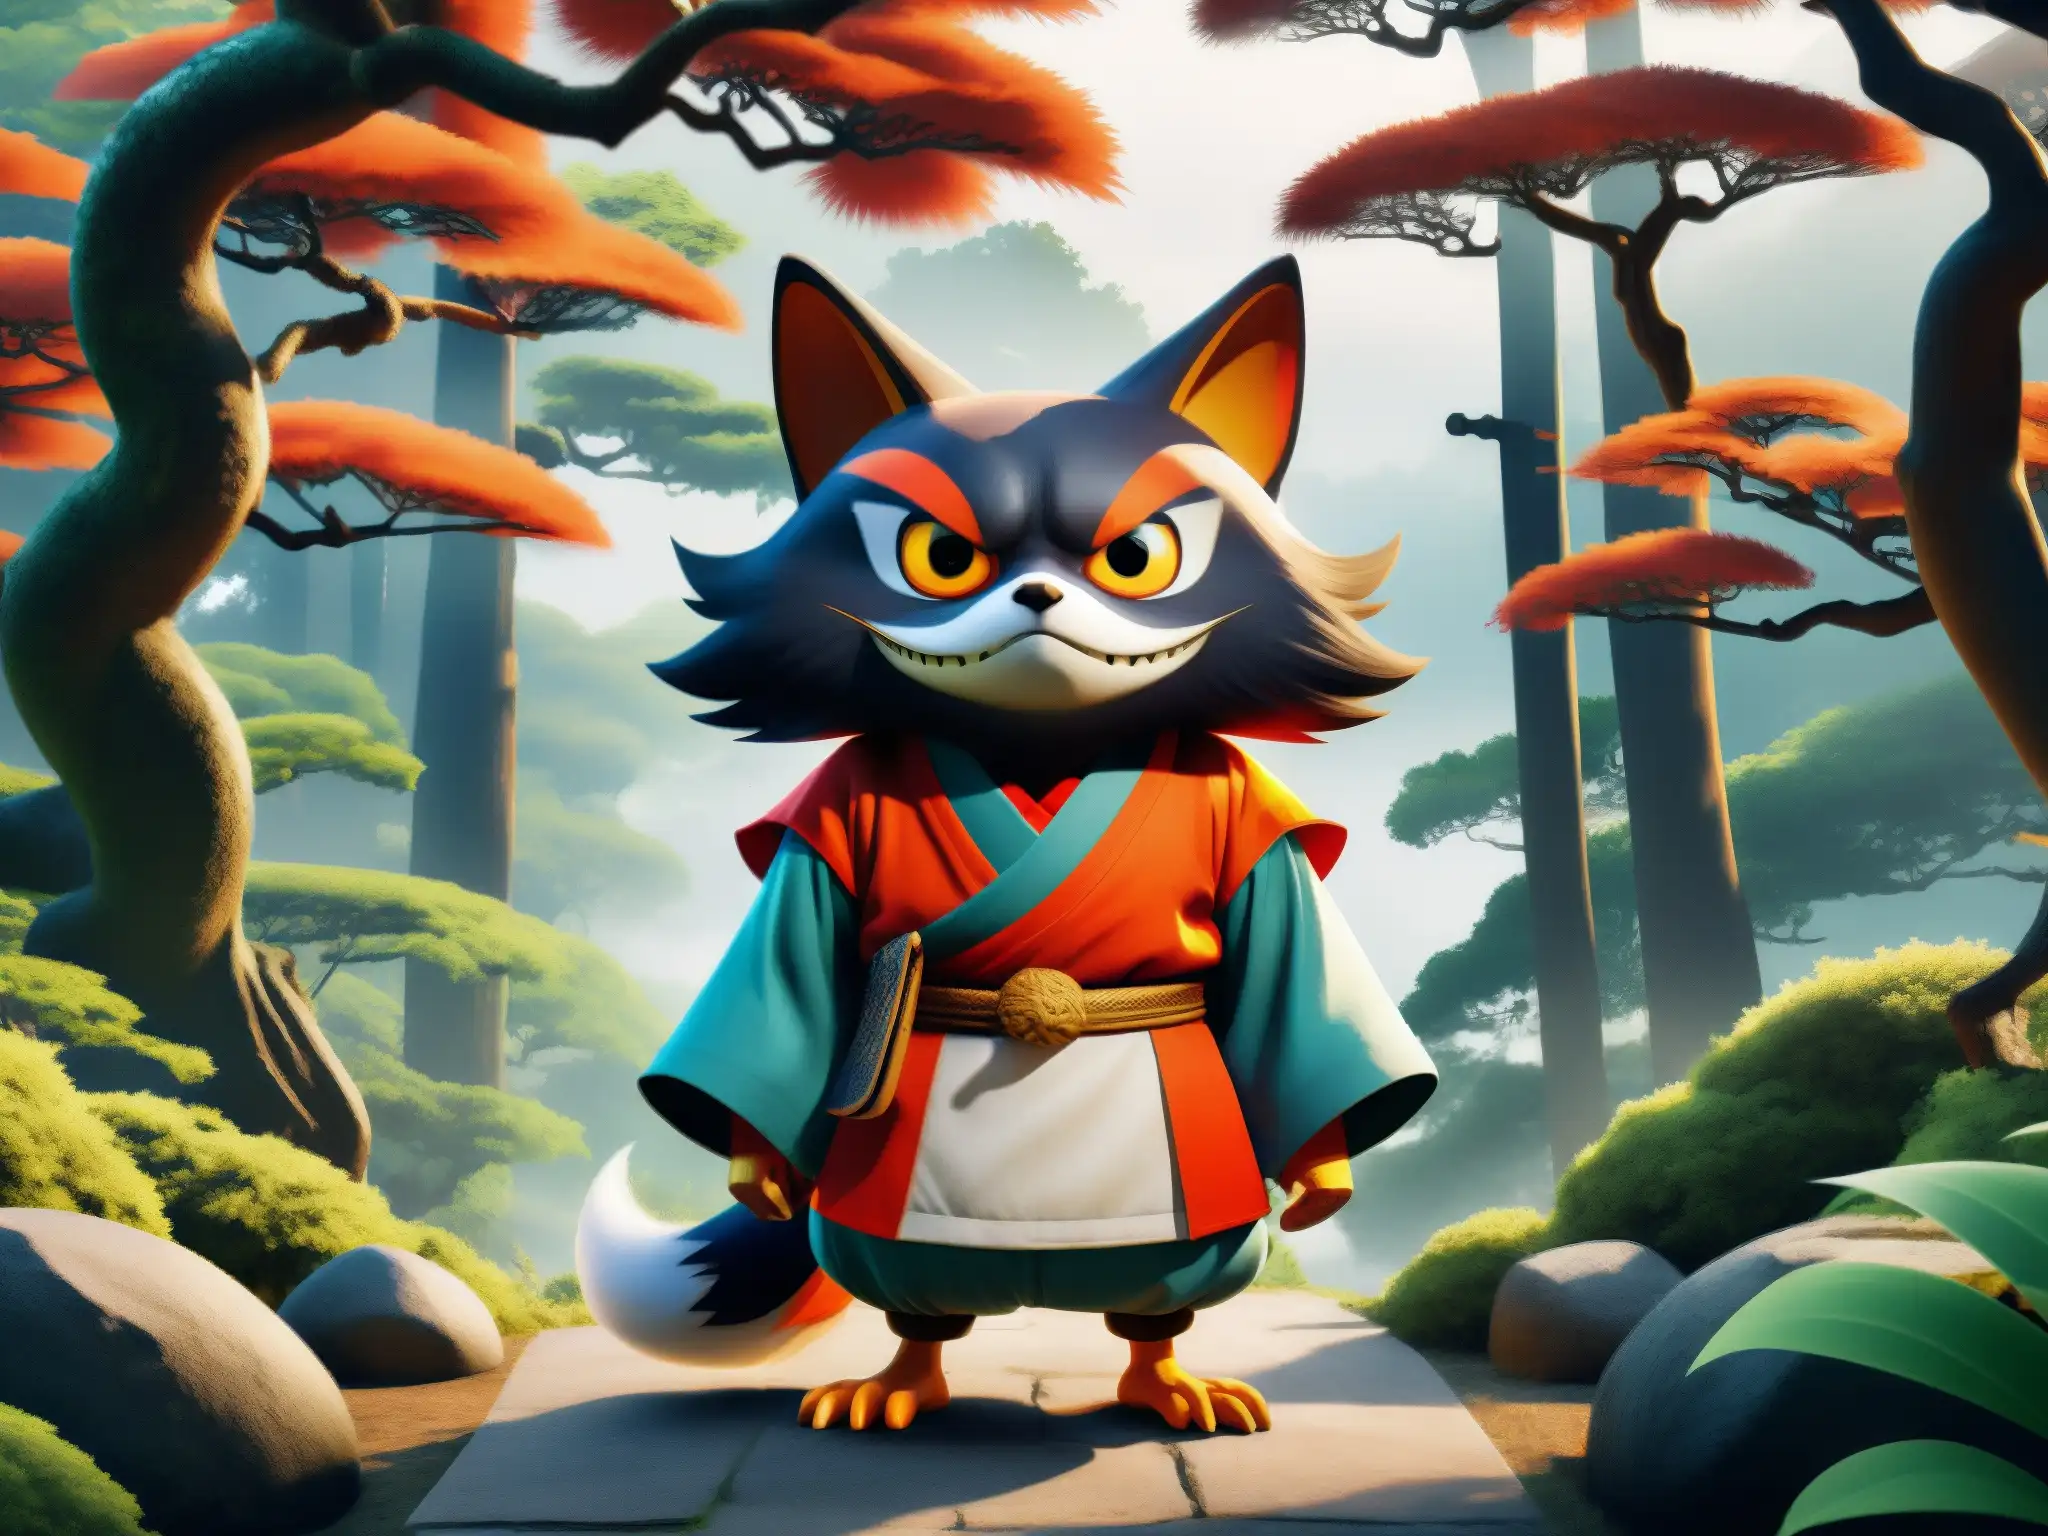 Un yokai japonés, como el kitsune o tengu, cobra vida en un entorno de videojuego, reviviendo mitos del folklore japonés